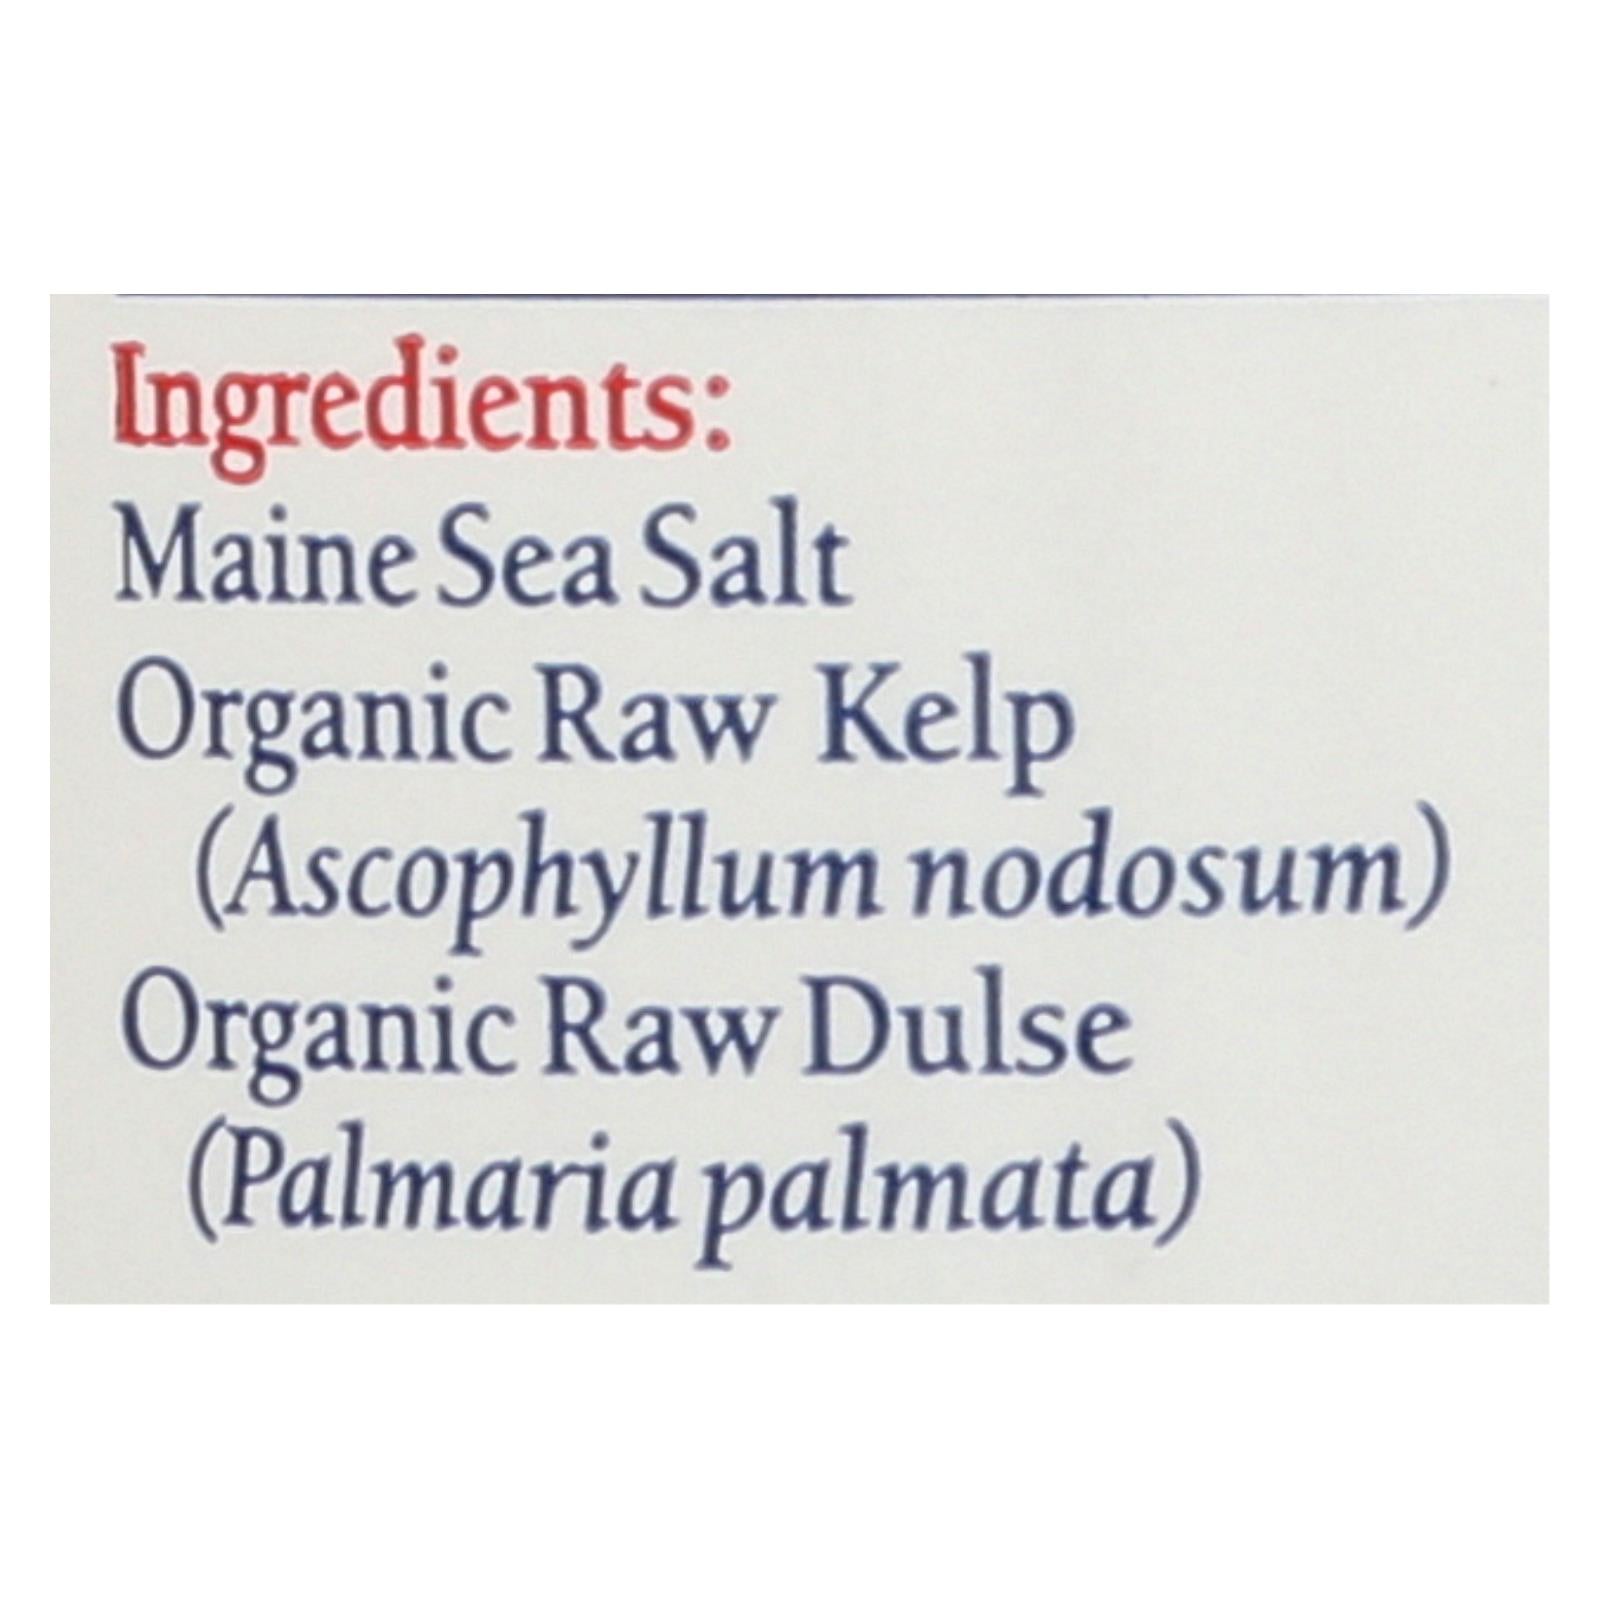 Maine Coast Organic Sea Seasonings - Sea Salt With Sea Veg - 1.5 Oz Shaker